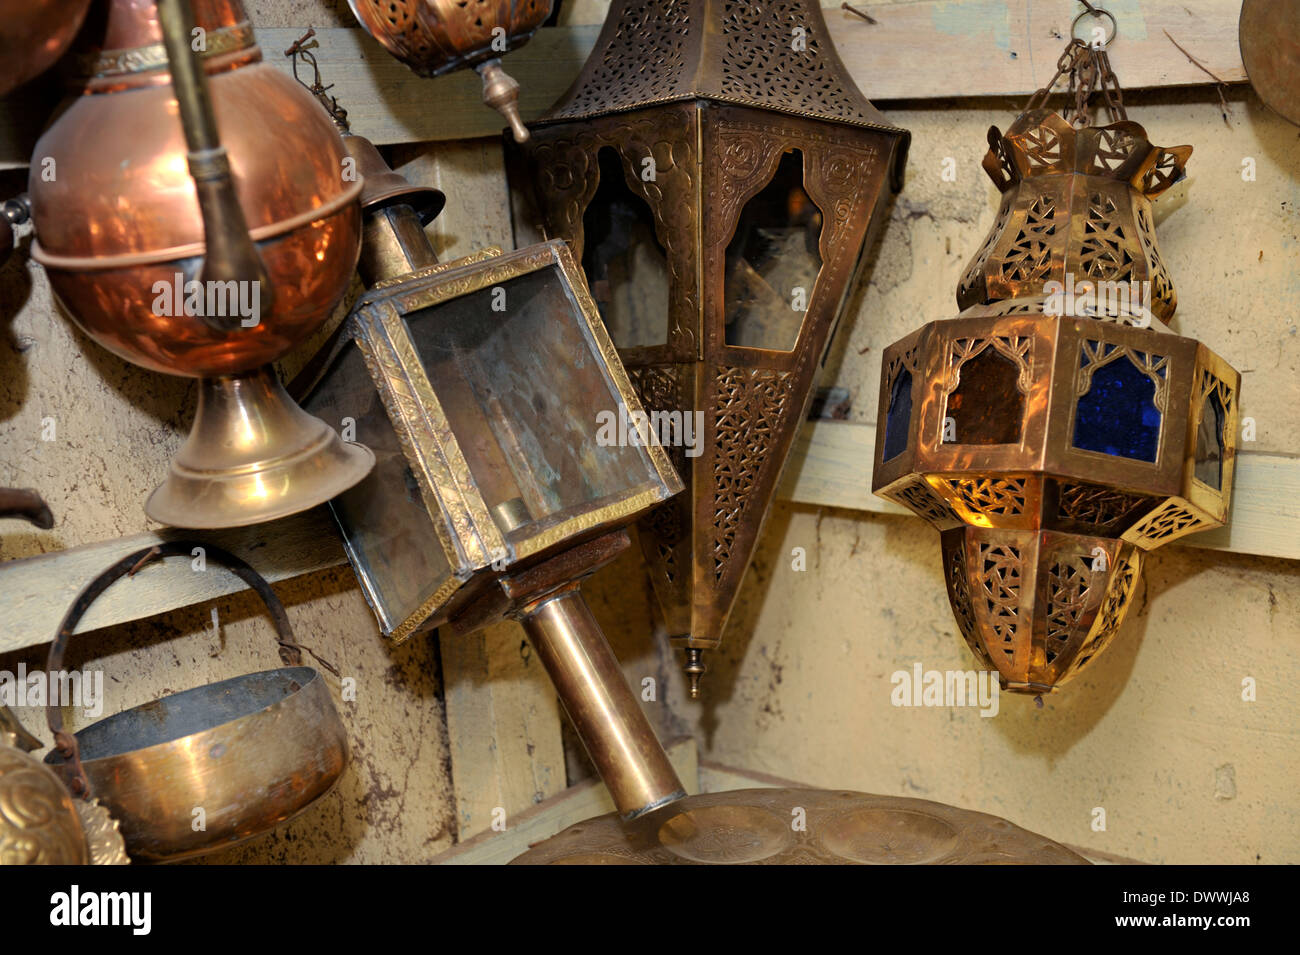 Metallarbeiten, Teekannen, Lampen, Töpfe in Souk Marrakech, Marokko, Nordafrika Stockfoto